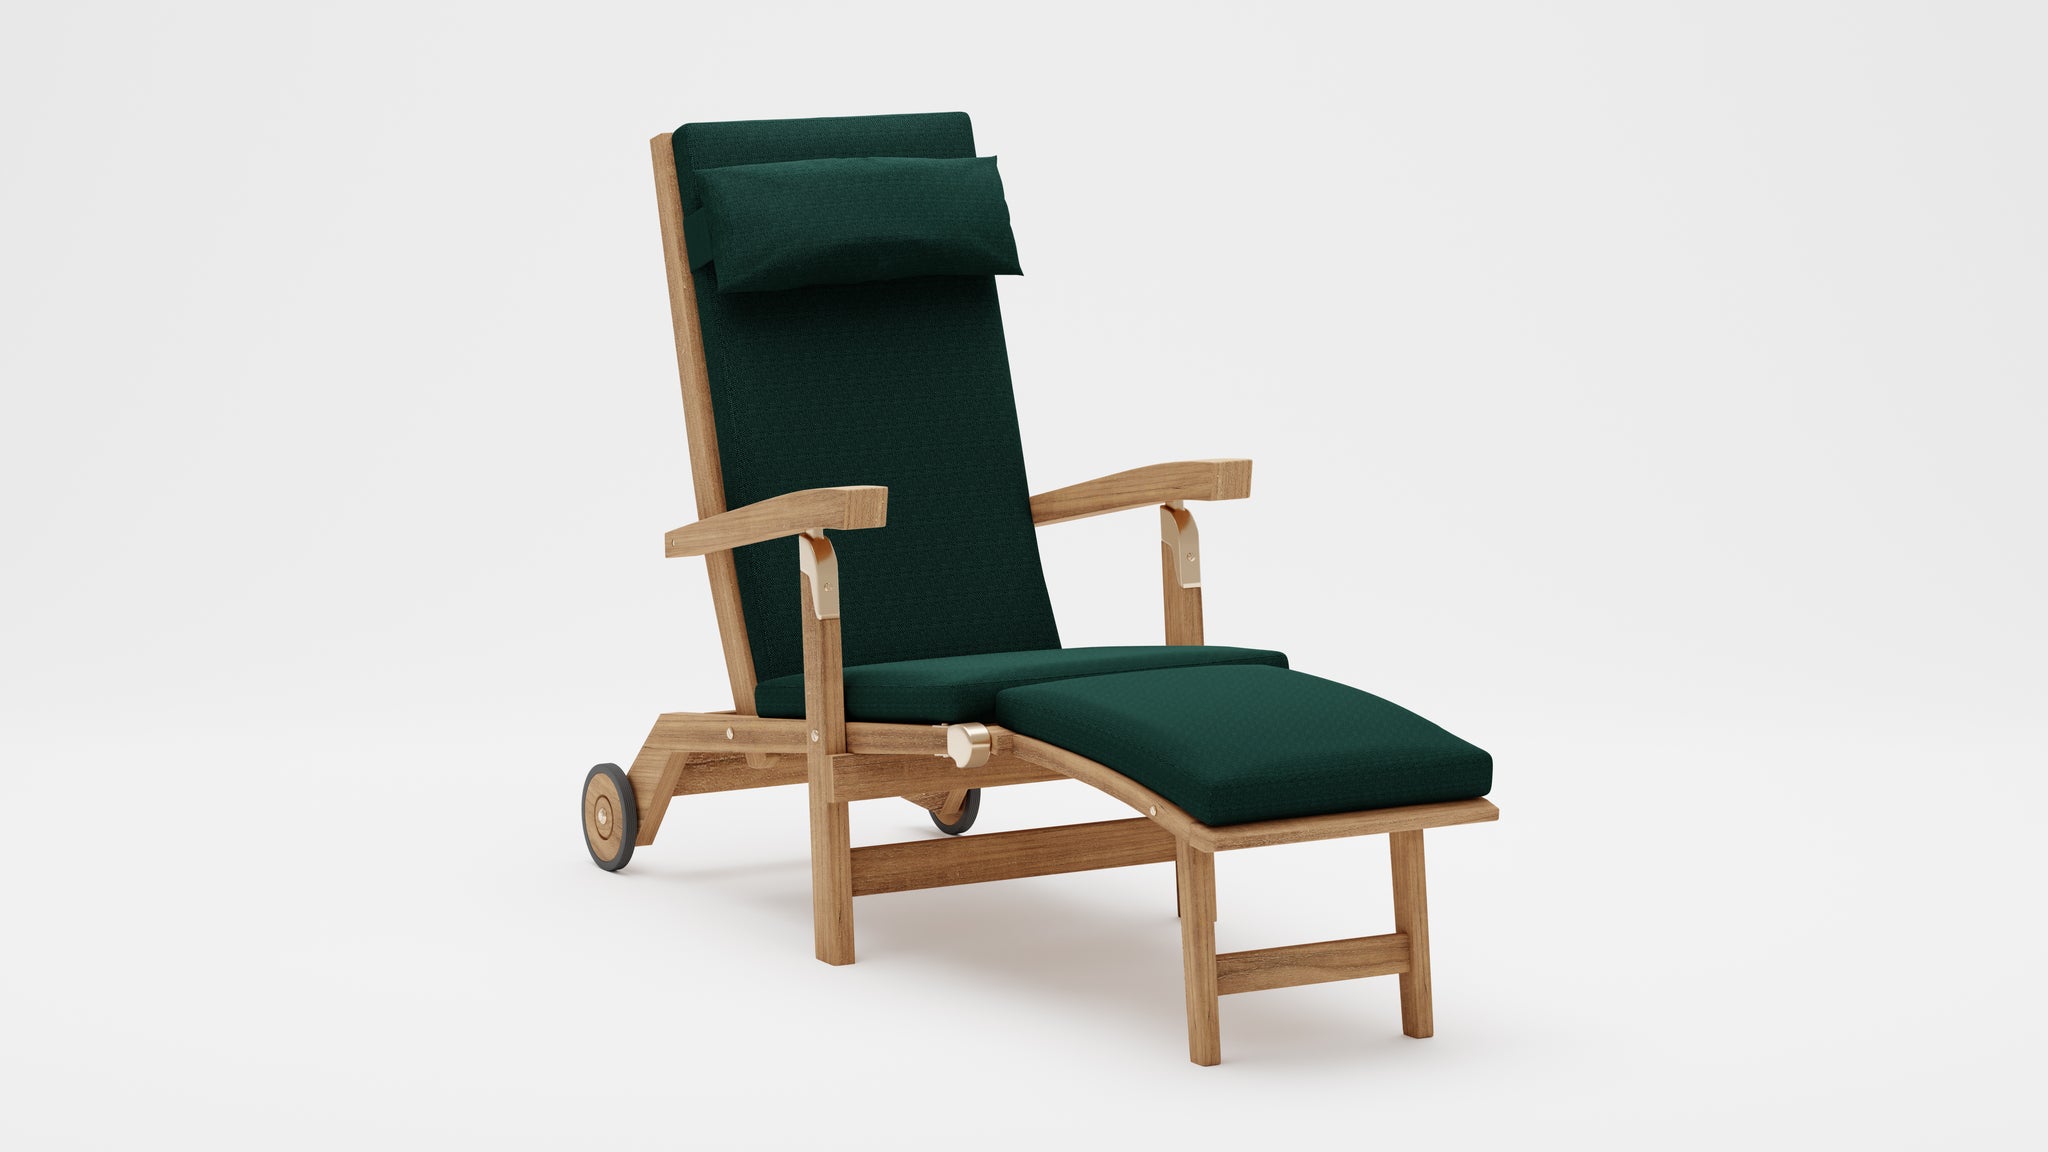 Teak Steamer Chair with Green Cushion